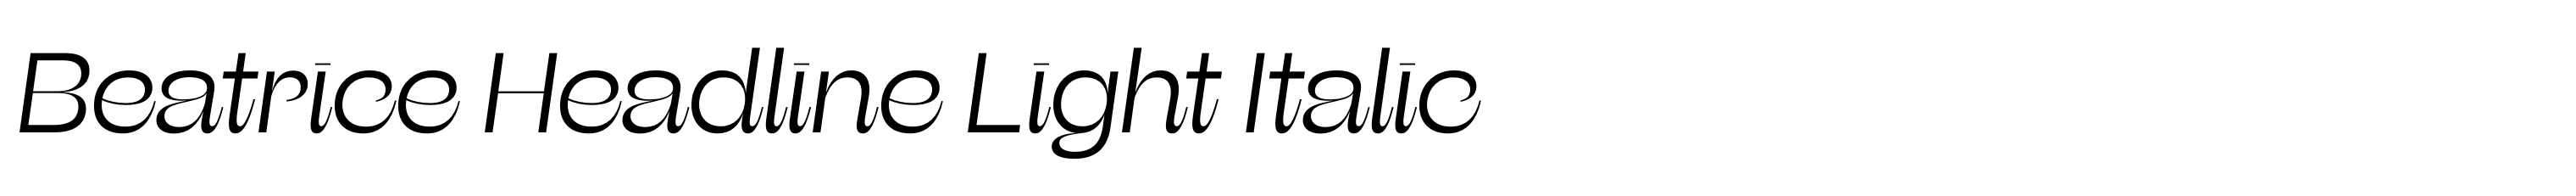 Beatrice Headline Light Italic